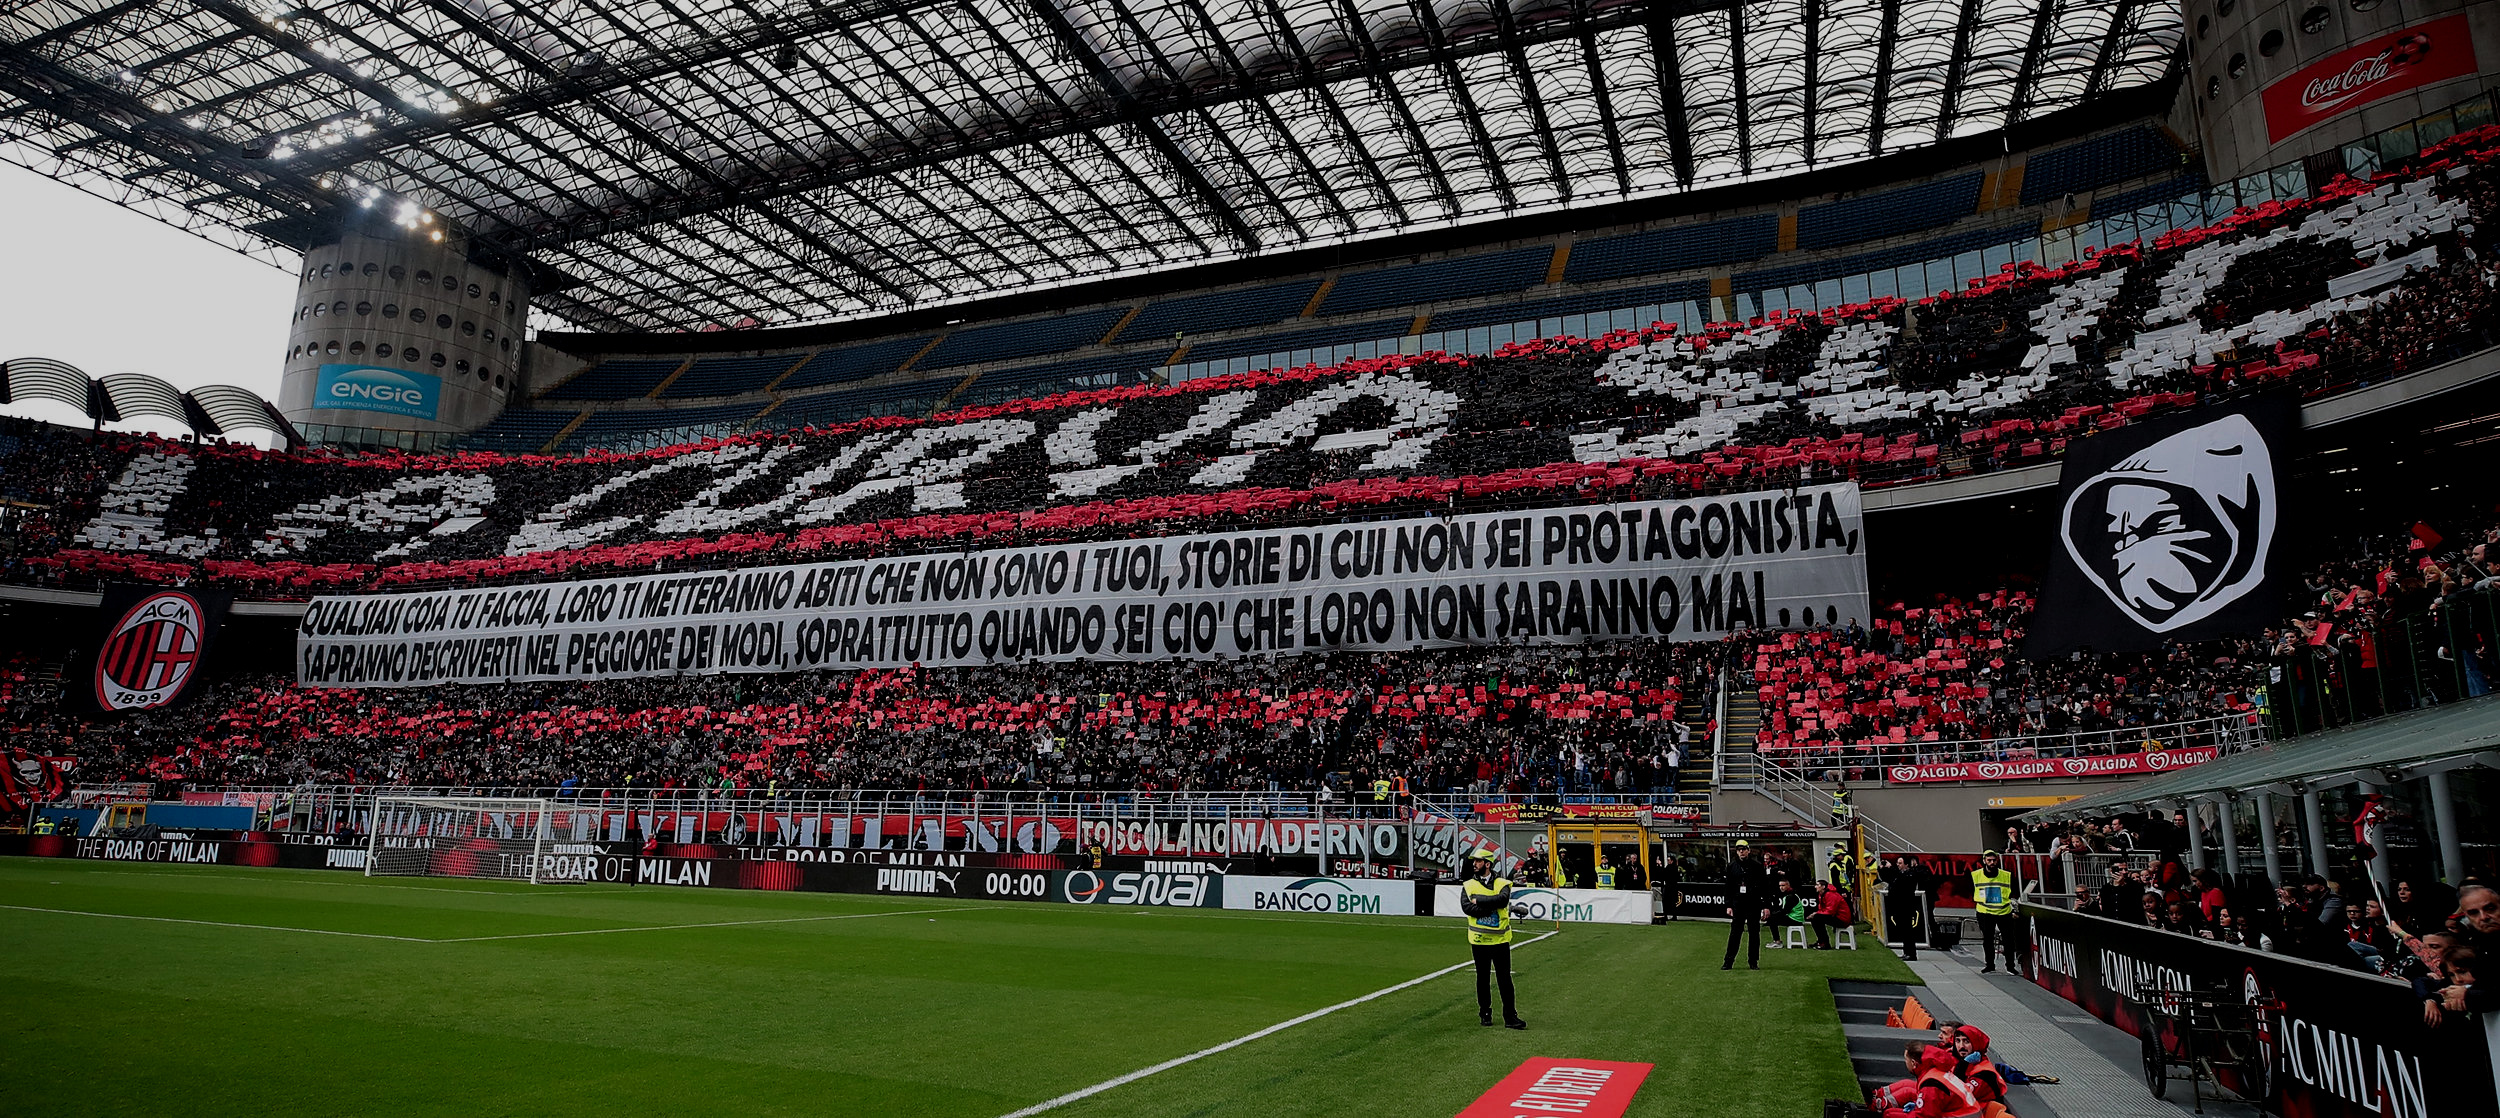  Inter/AC Milan: De to store Milano-klubber har slået pjalterne sammen i håbet om at få et nyt og moderne stadion til at spille deres hjemmekampe på. Selvom San Siro på mange måder emmer af fodboldhistorie, har det gamle fodboldkatedral set væsentlig